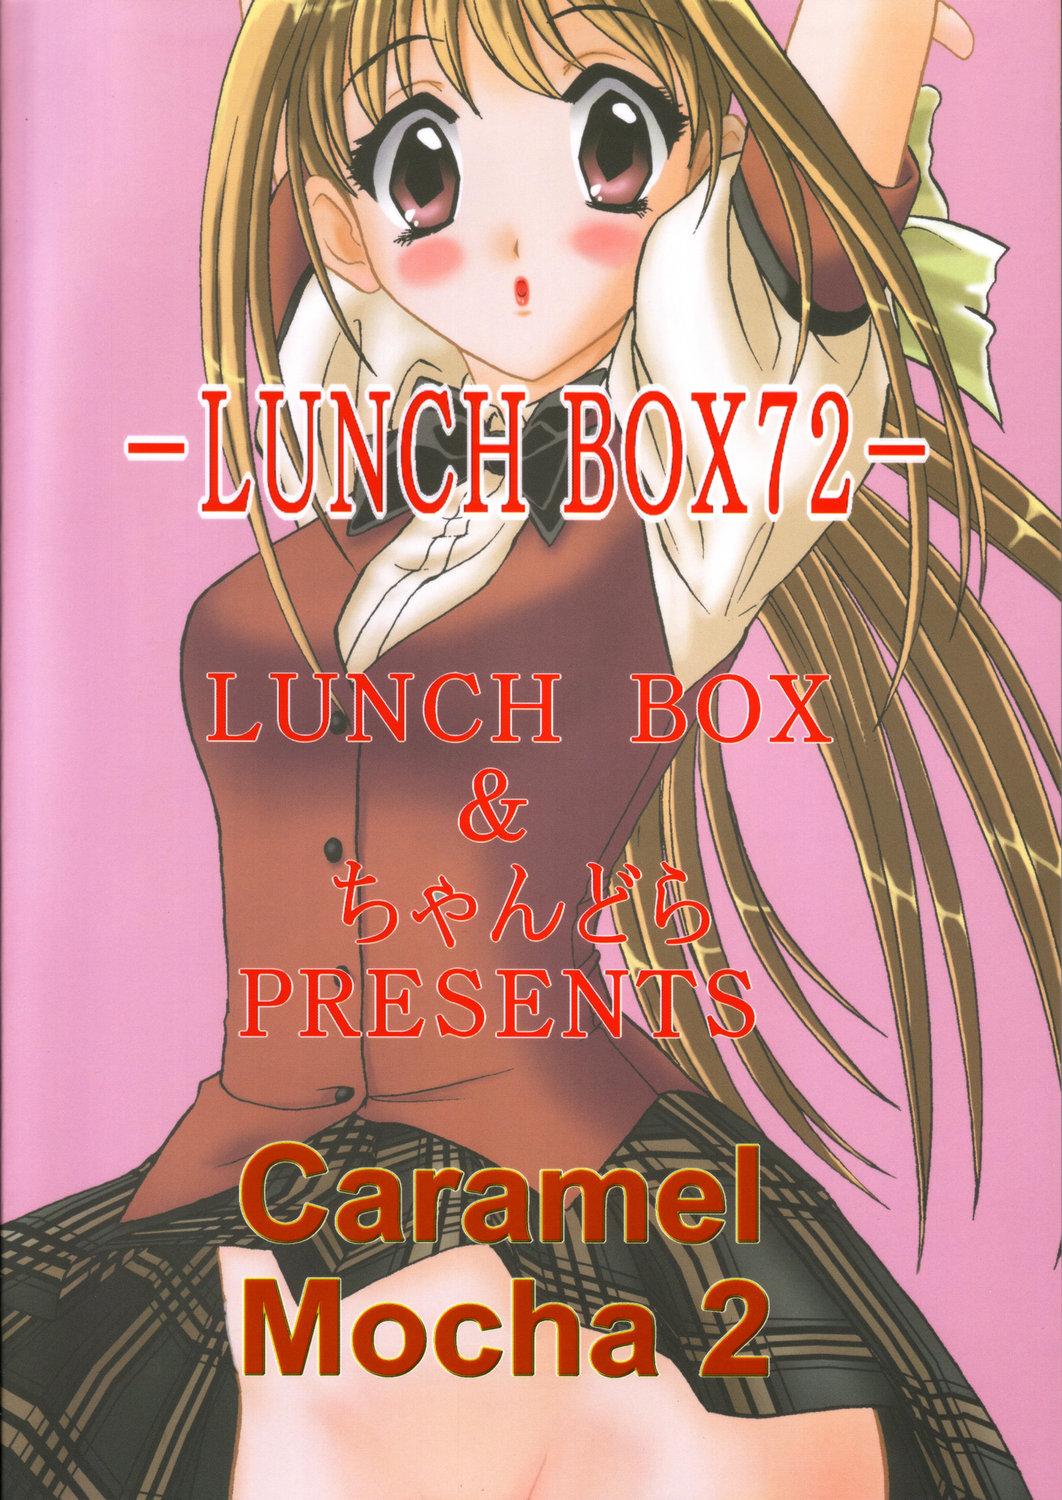 Lunch Box 72 - Caramel Mocha 2 37